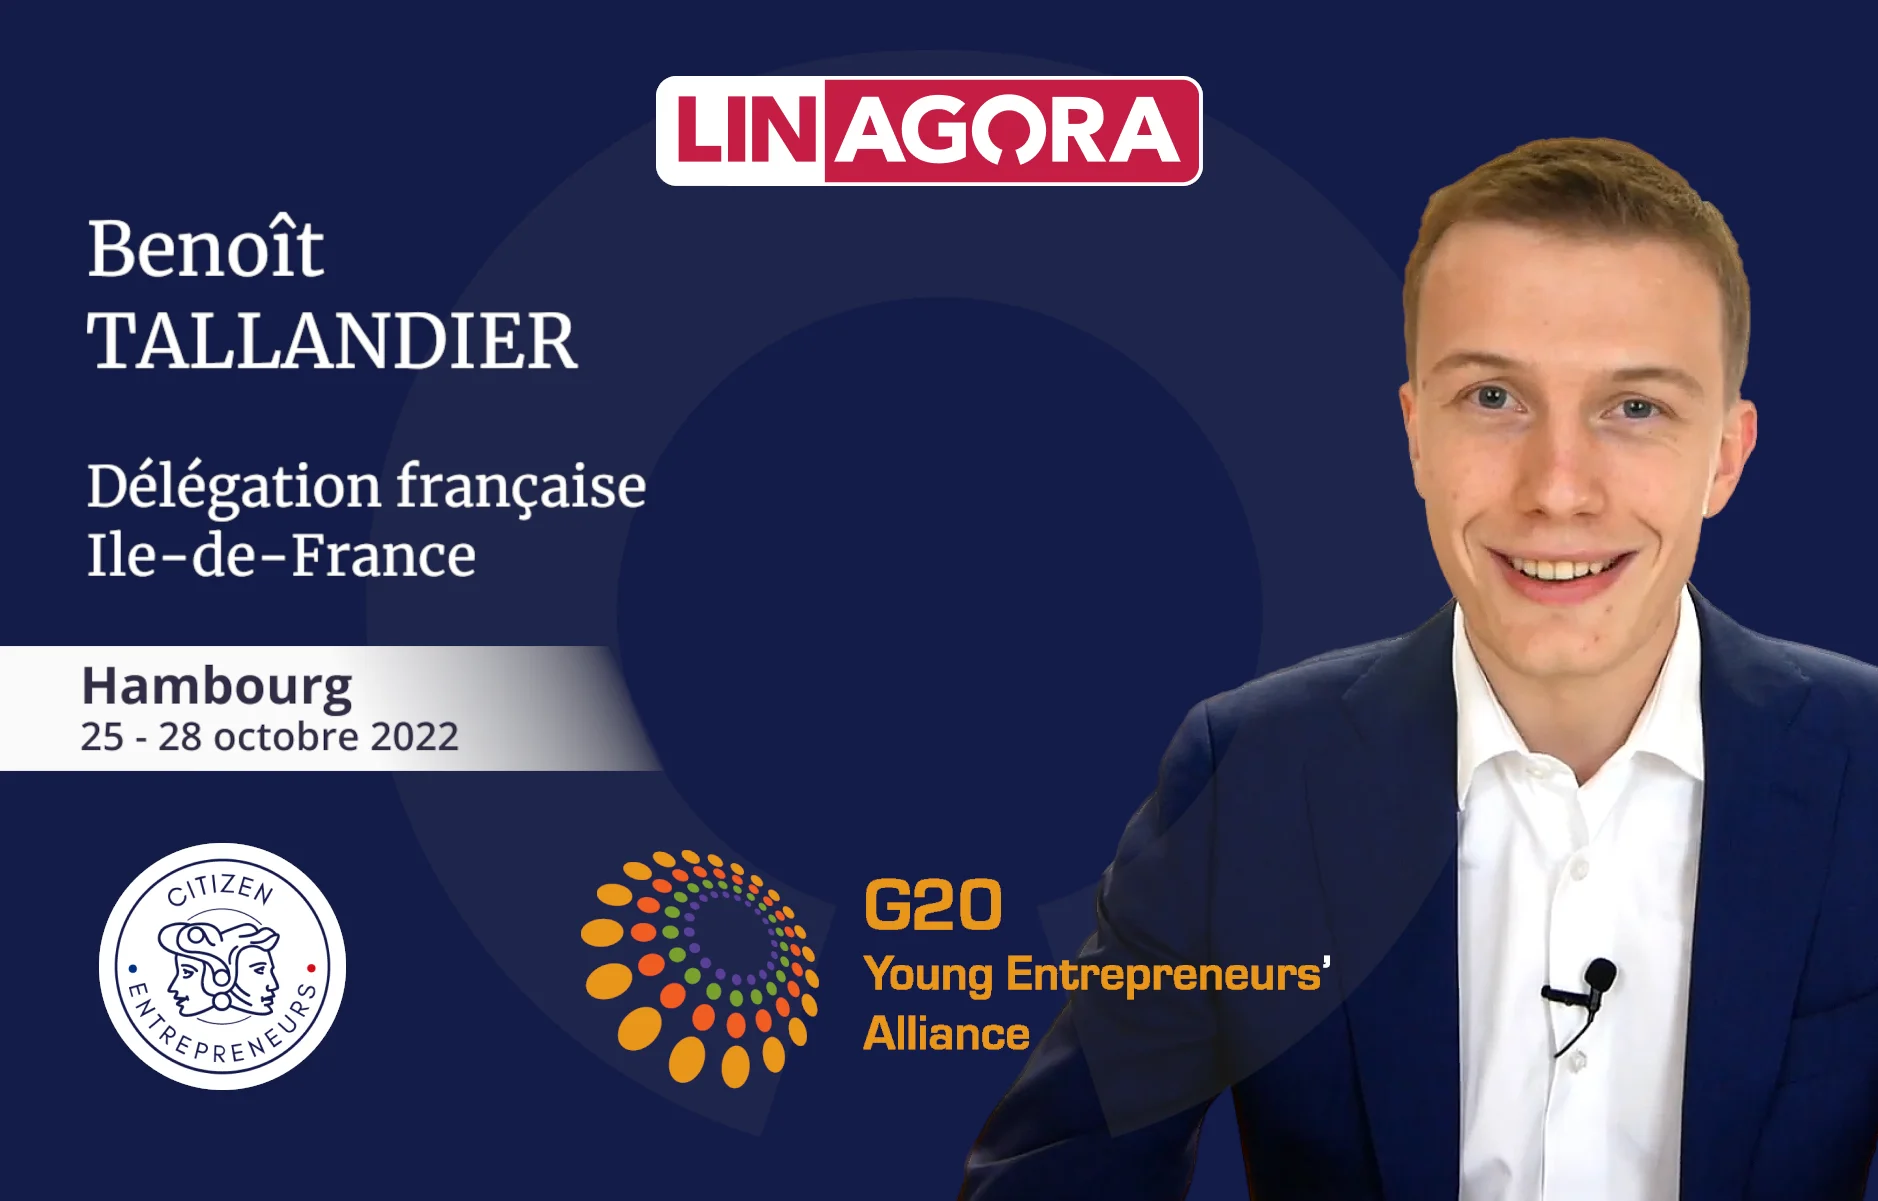 La G20 Young Entrepreneurs Alliance- Benoit Tallandier